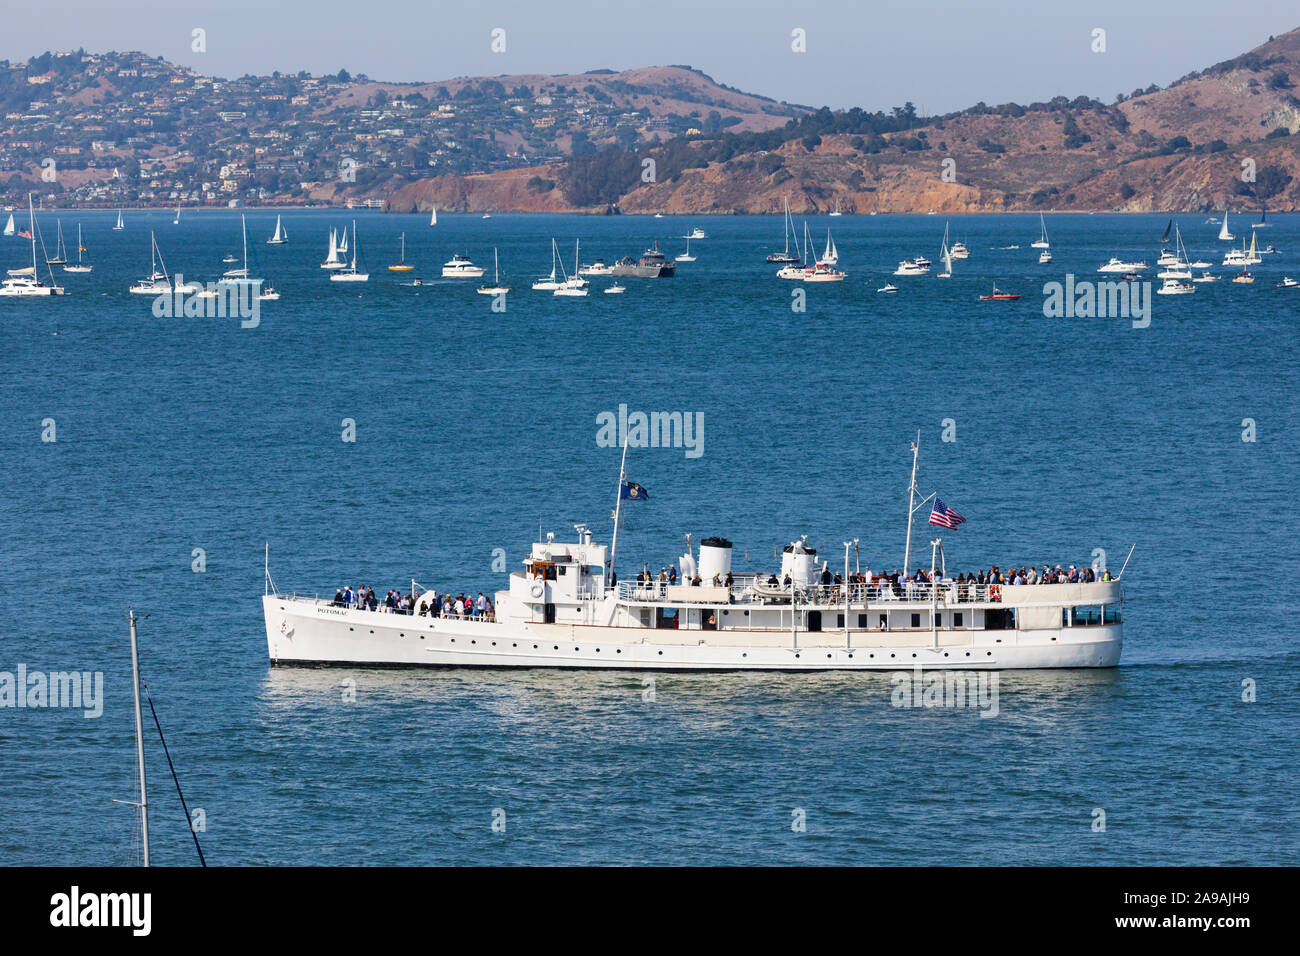 USS Potomac, die restaurierte Presidential Yacht von Franklin D Roosevelt, Kreuzfahrten San Francisco Bay. Flotte Woche 2019. Kalifornien, Vereinigte Staaten von Amerika Stockfoto